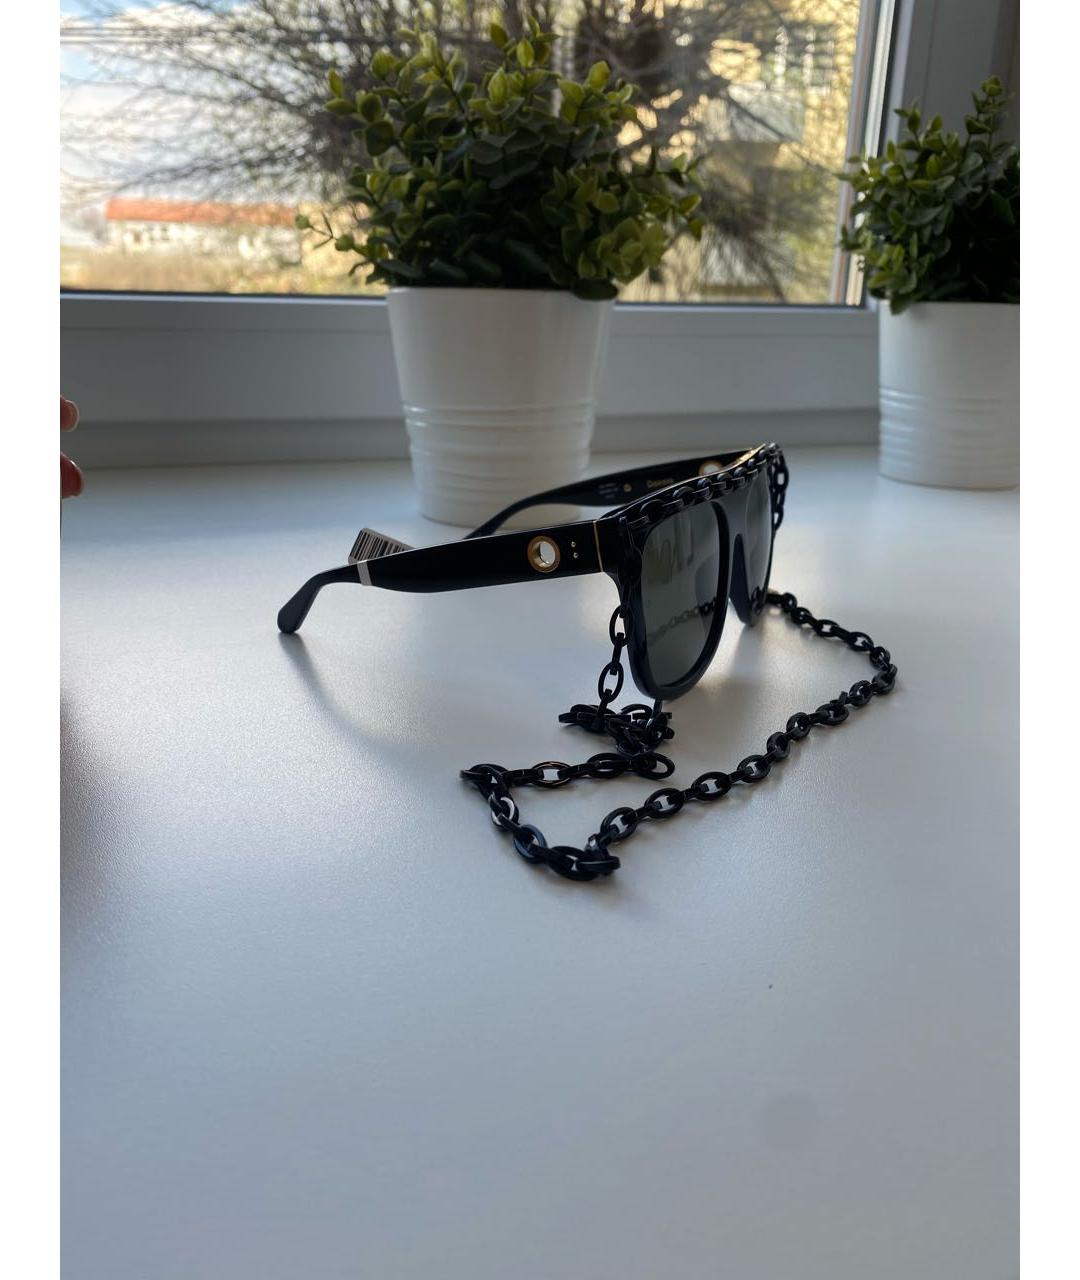 LINDA FARROW Черные пластиковые солнцезащитные очки, фото 2